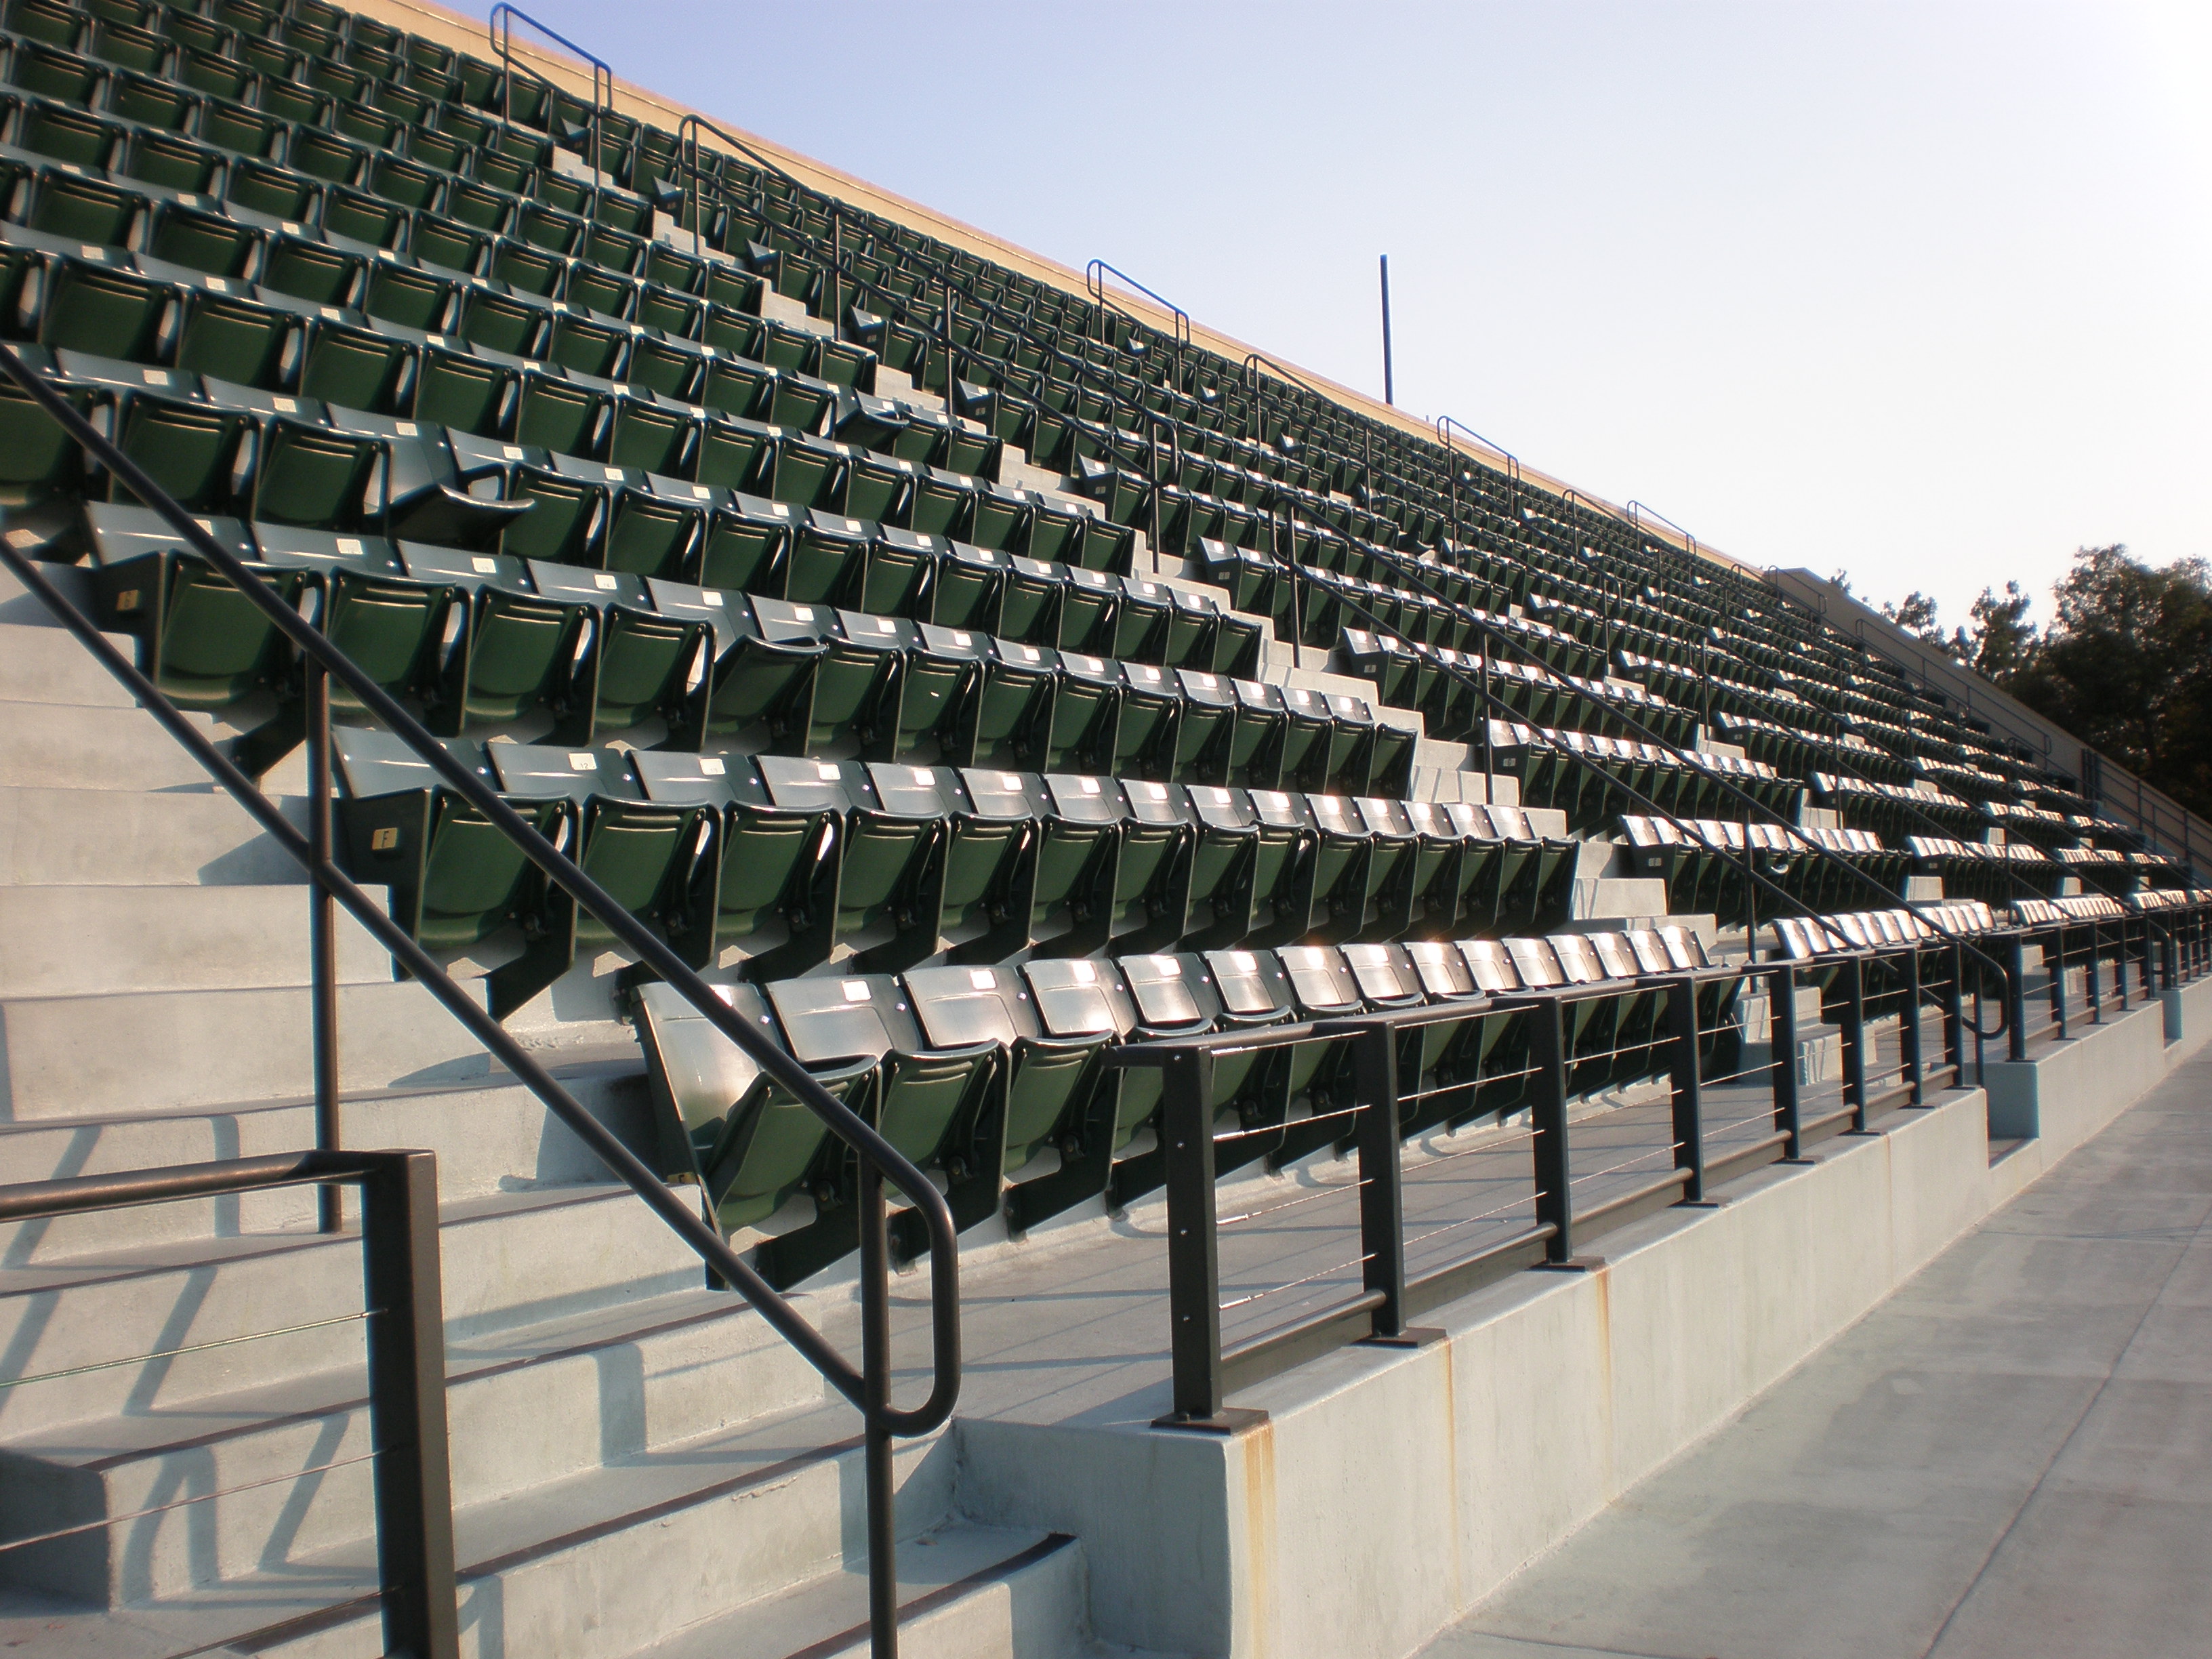 File:Taube Family Tennis Stadium seating 1.JPG - Wikimedia Commons